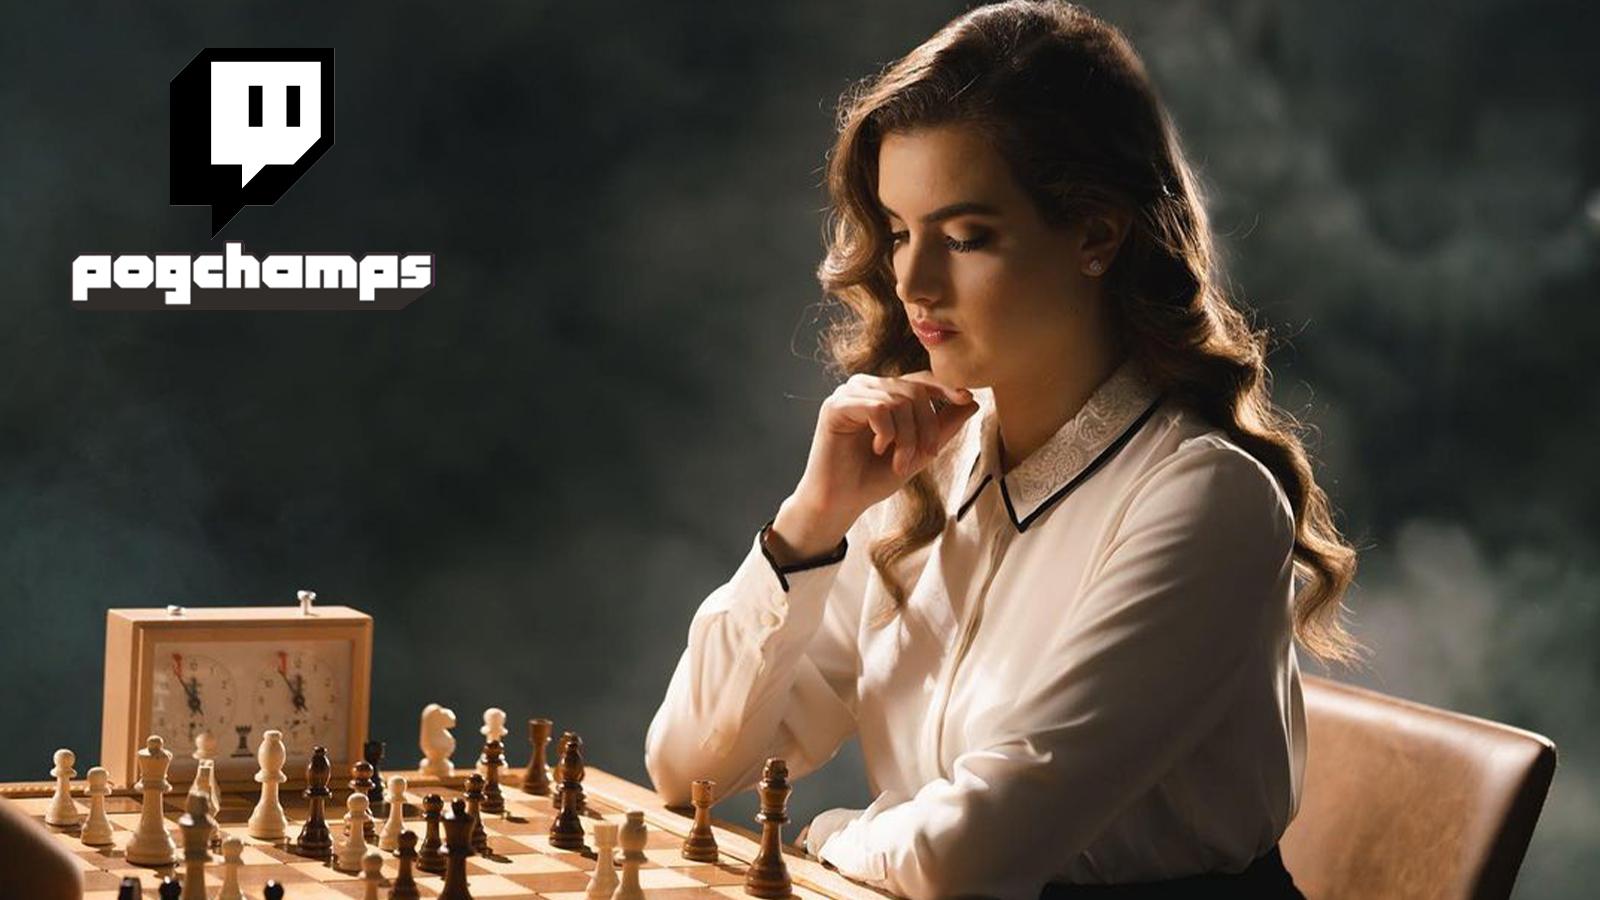 Chess GM Hikaru slams Alexandra Botez for miscategorizing Twitch streams -  Dexerto